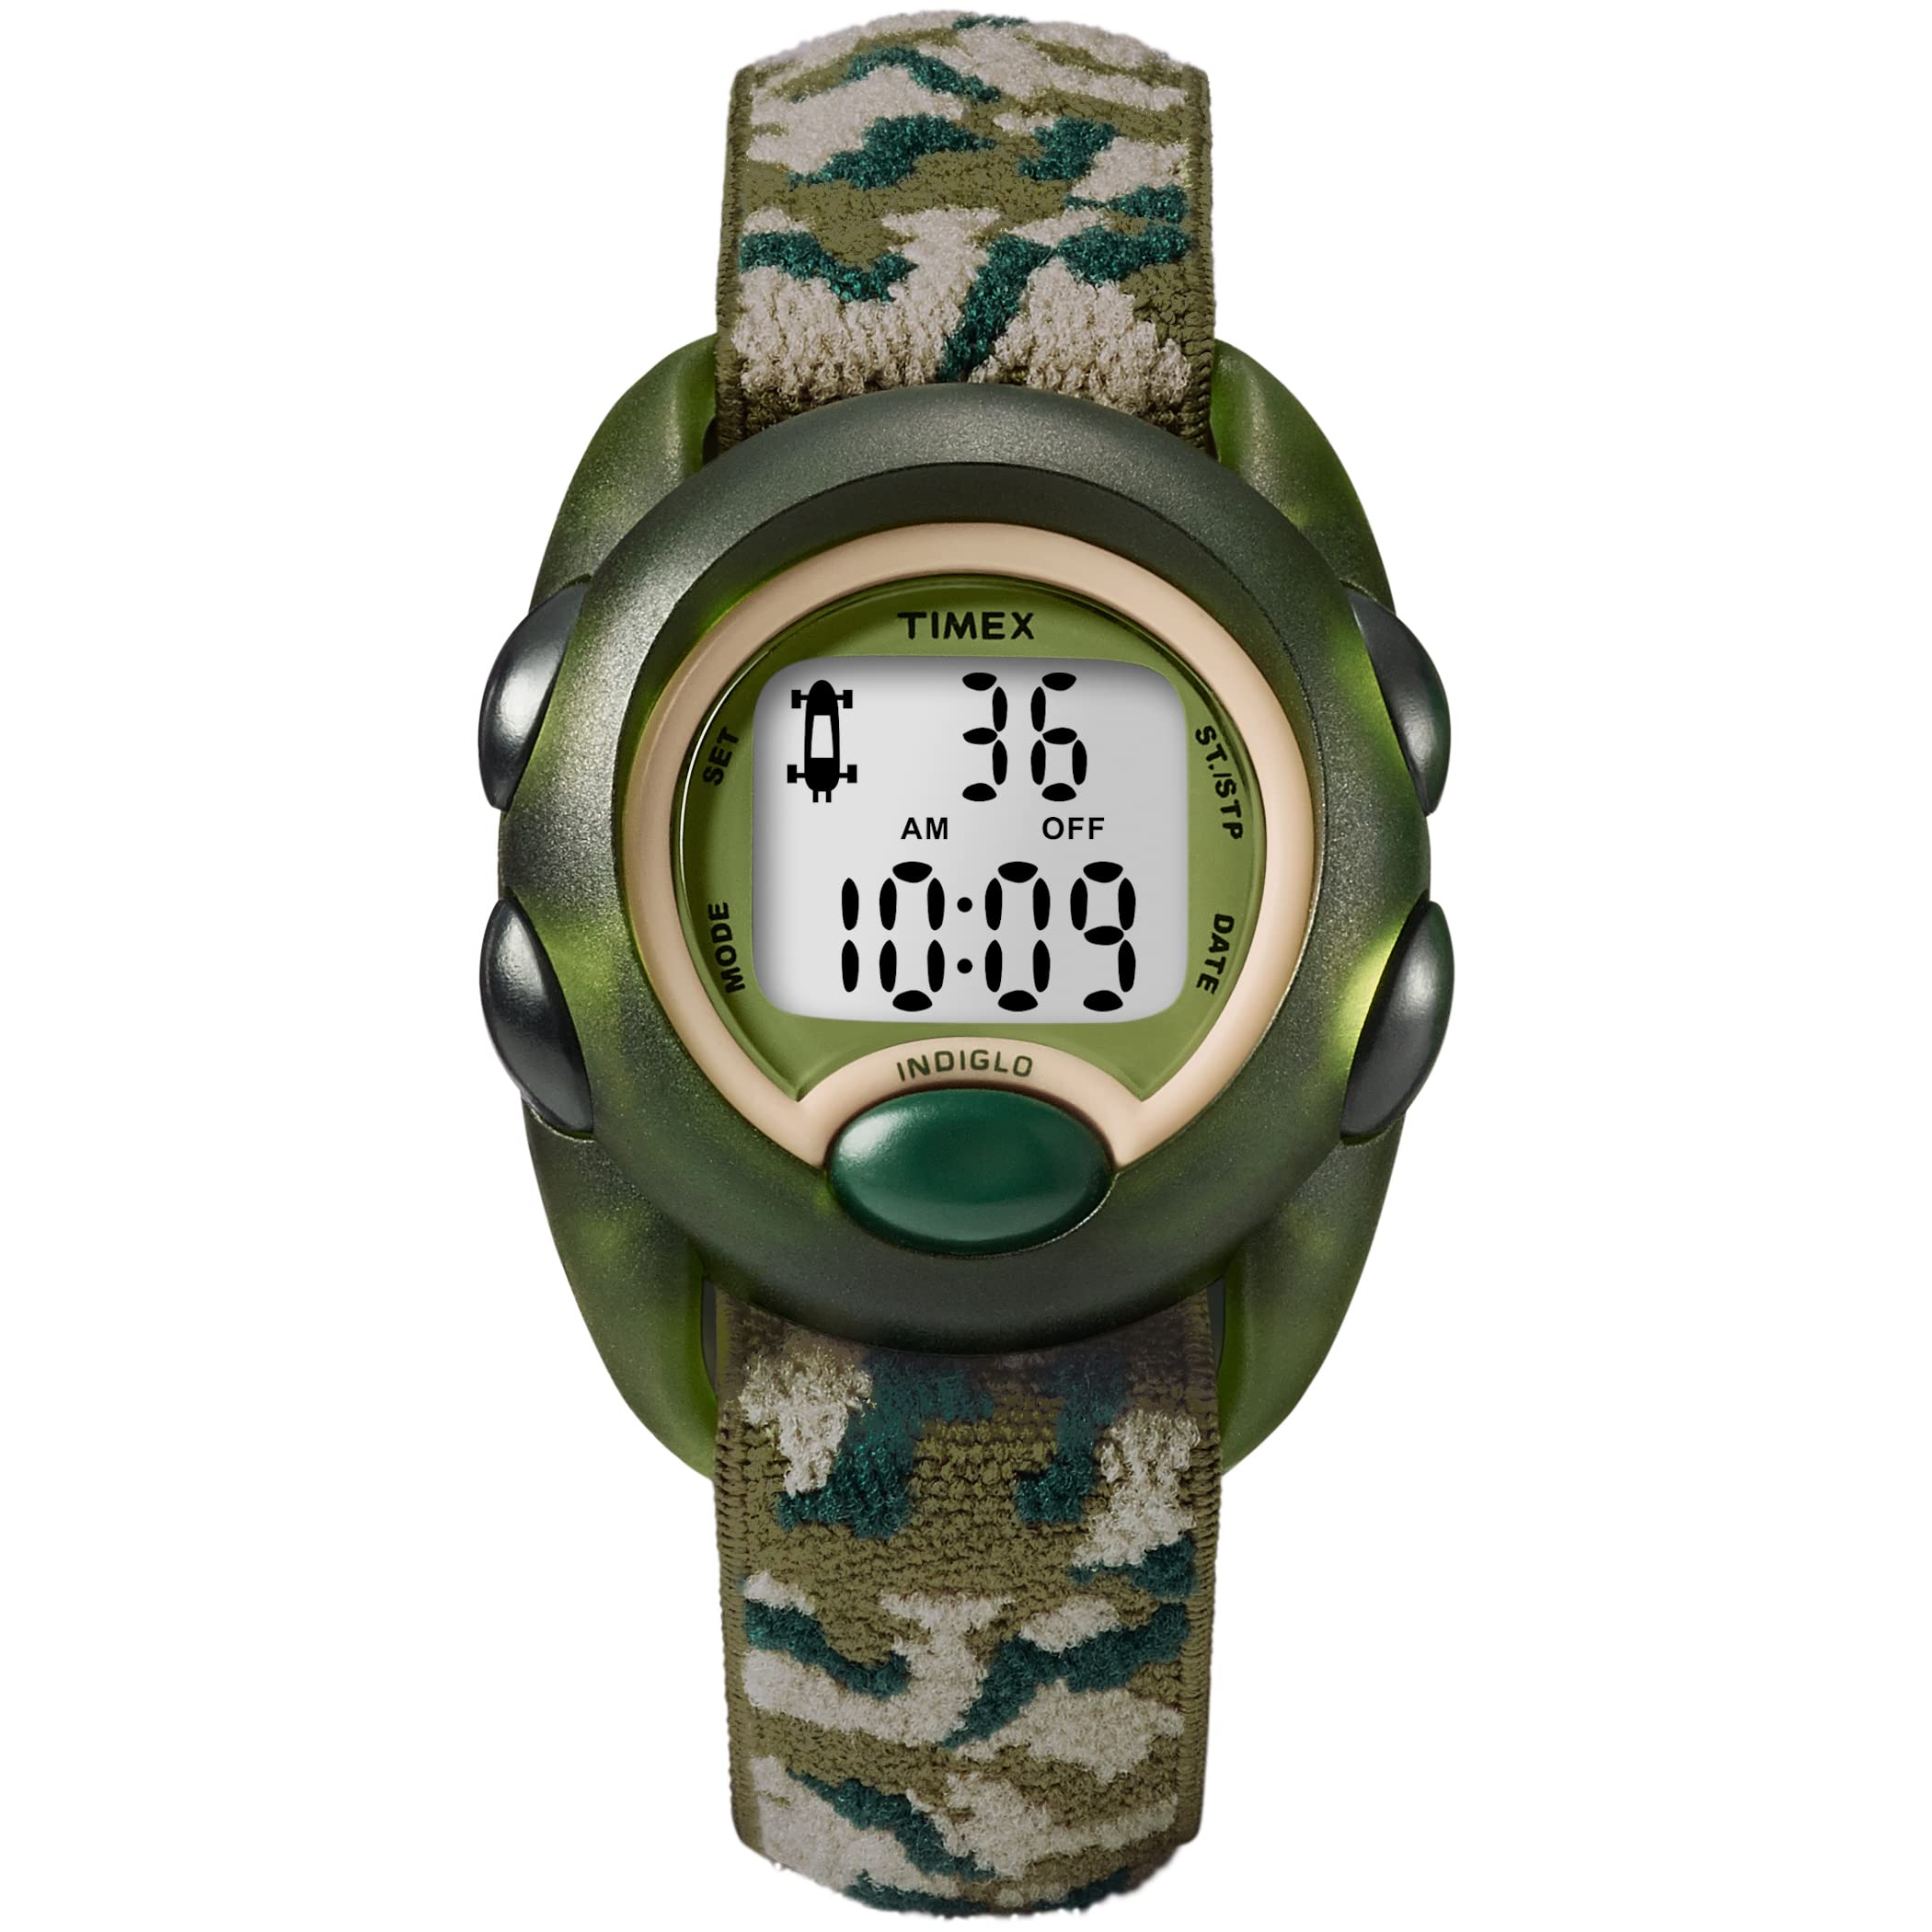 Mua Timex Boys Time Machines Digital Watch trên Amazon Mỹ chính hãng 2023 |  Giaonhan247